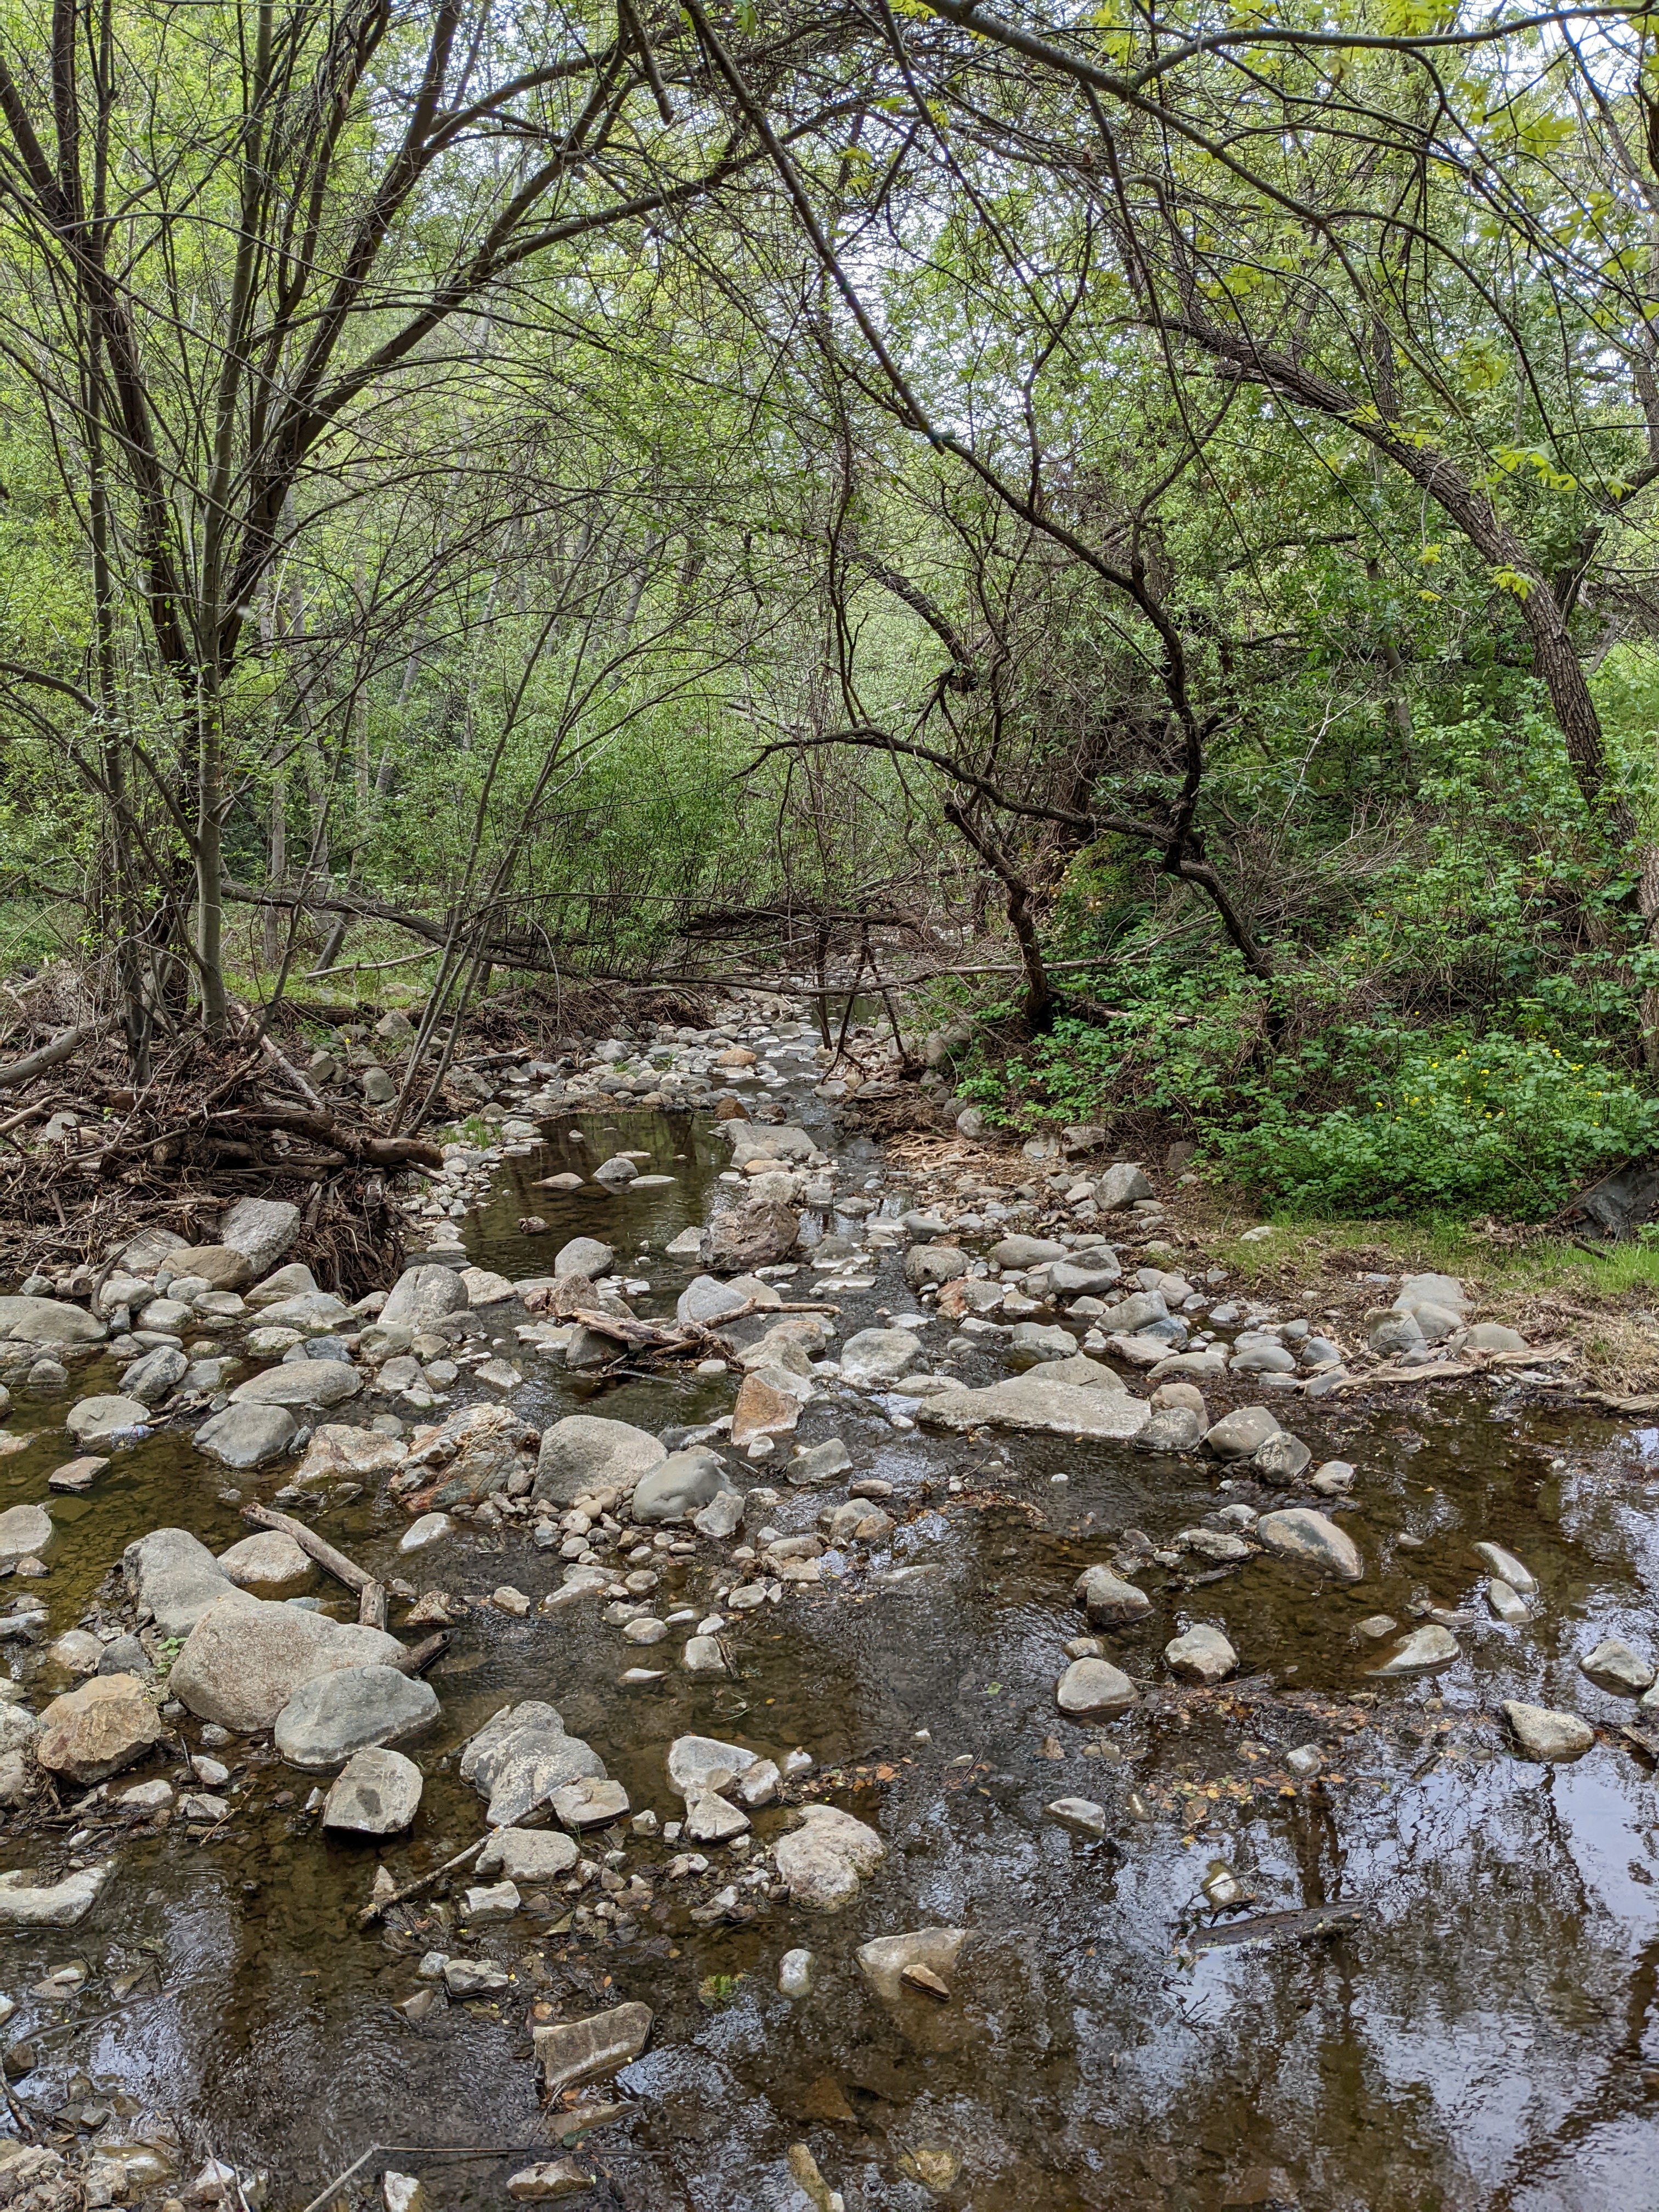 Penitencia Creek scene in spring